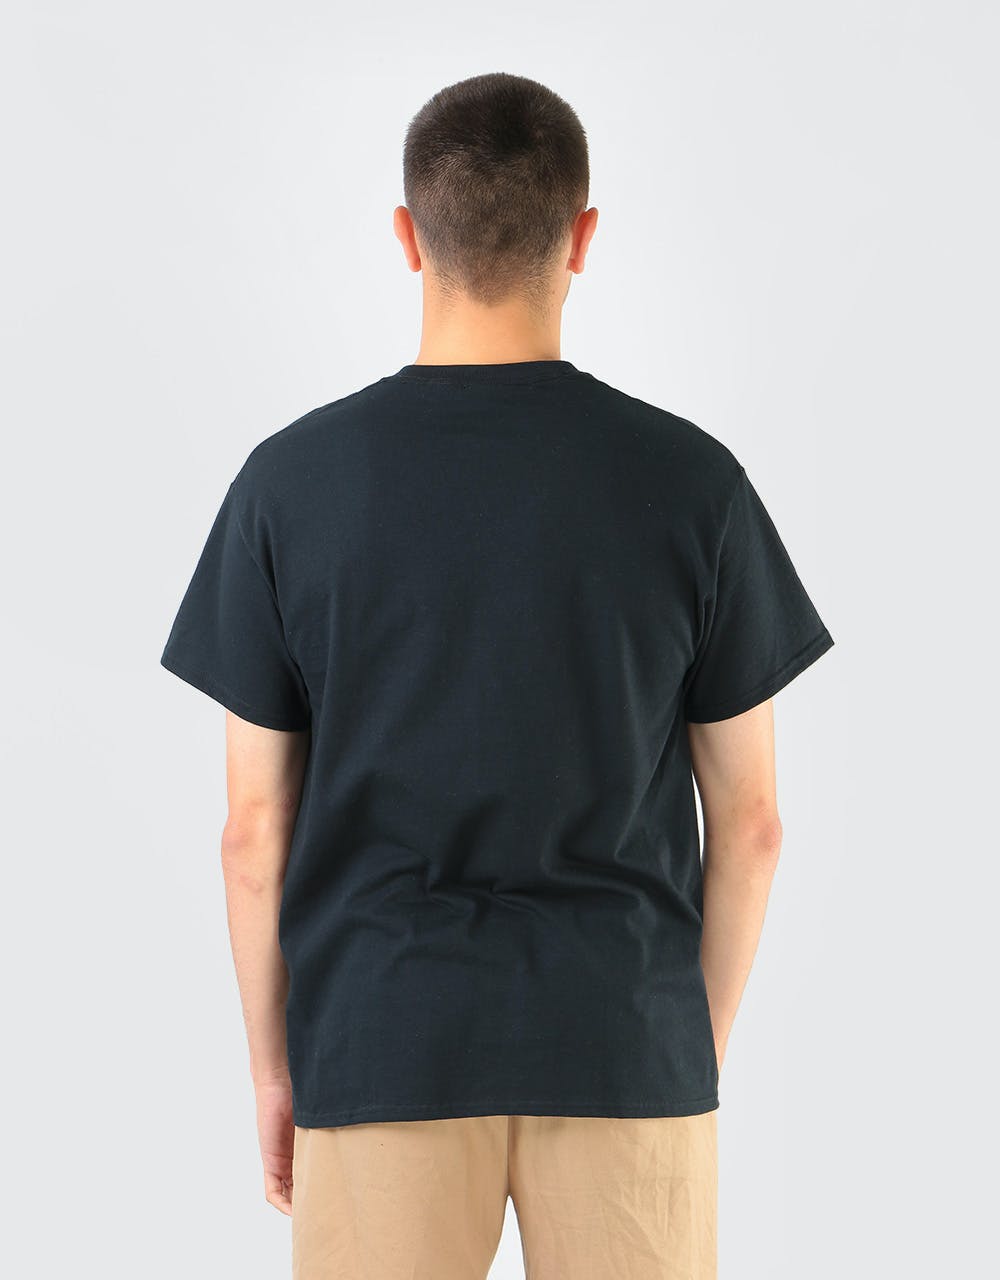 Thrasher Scorched Outline T-Shirt - Black